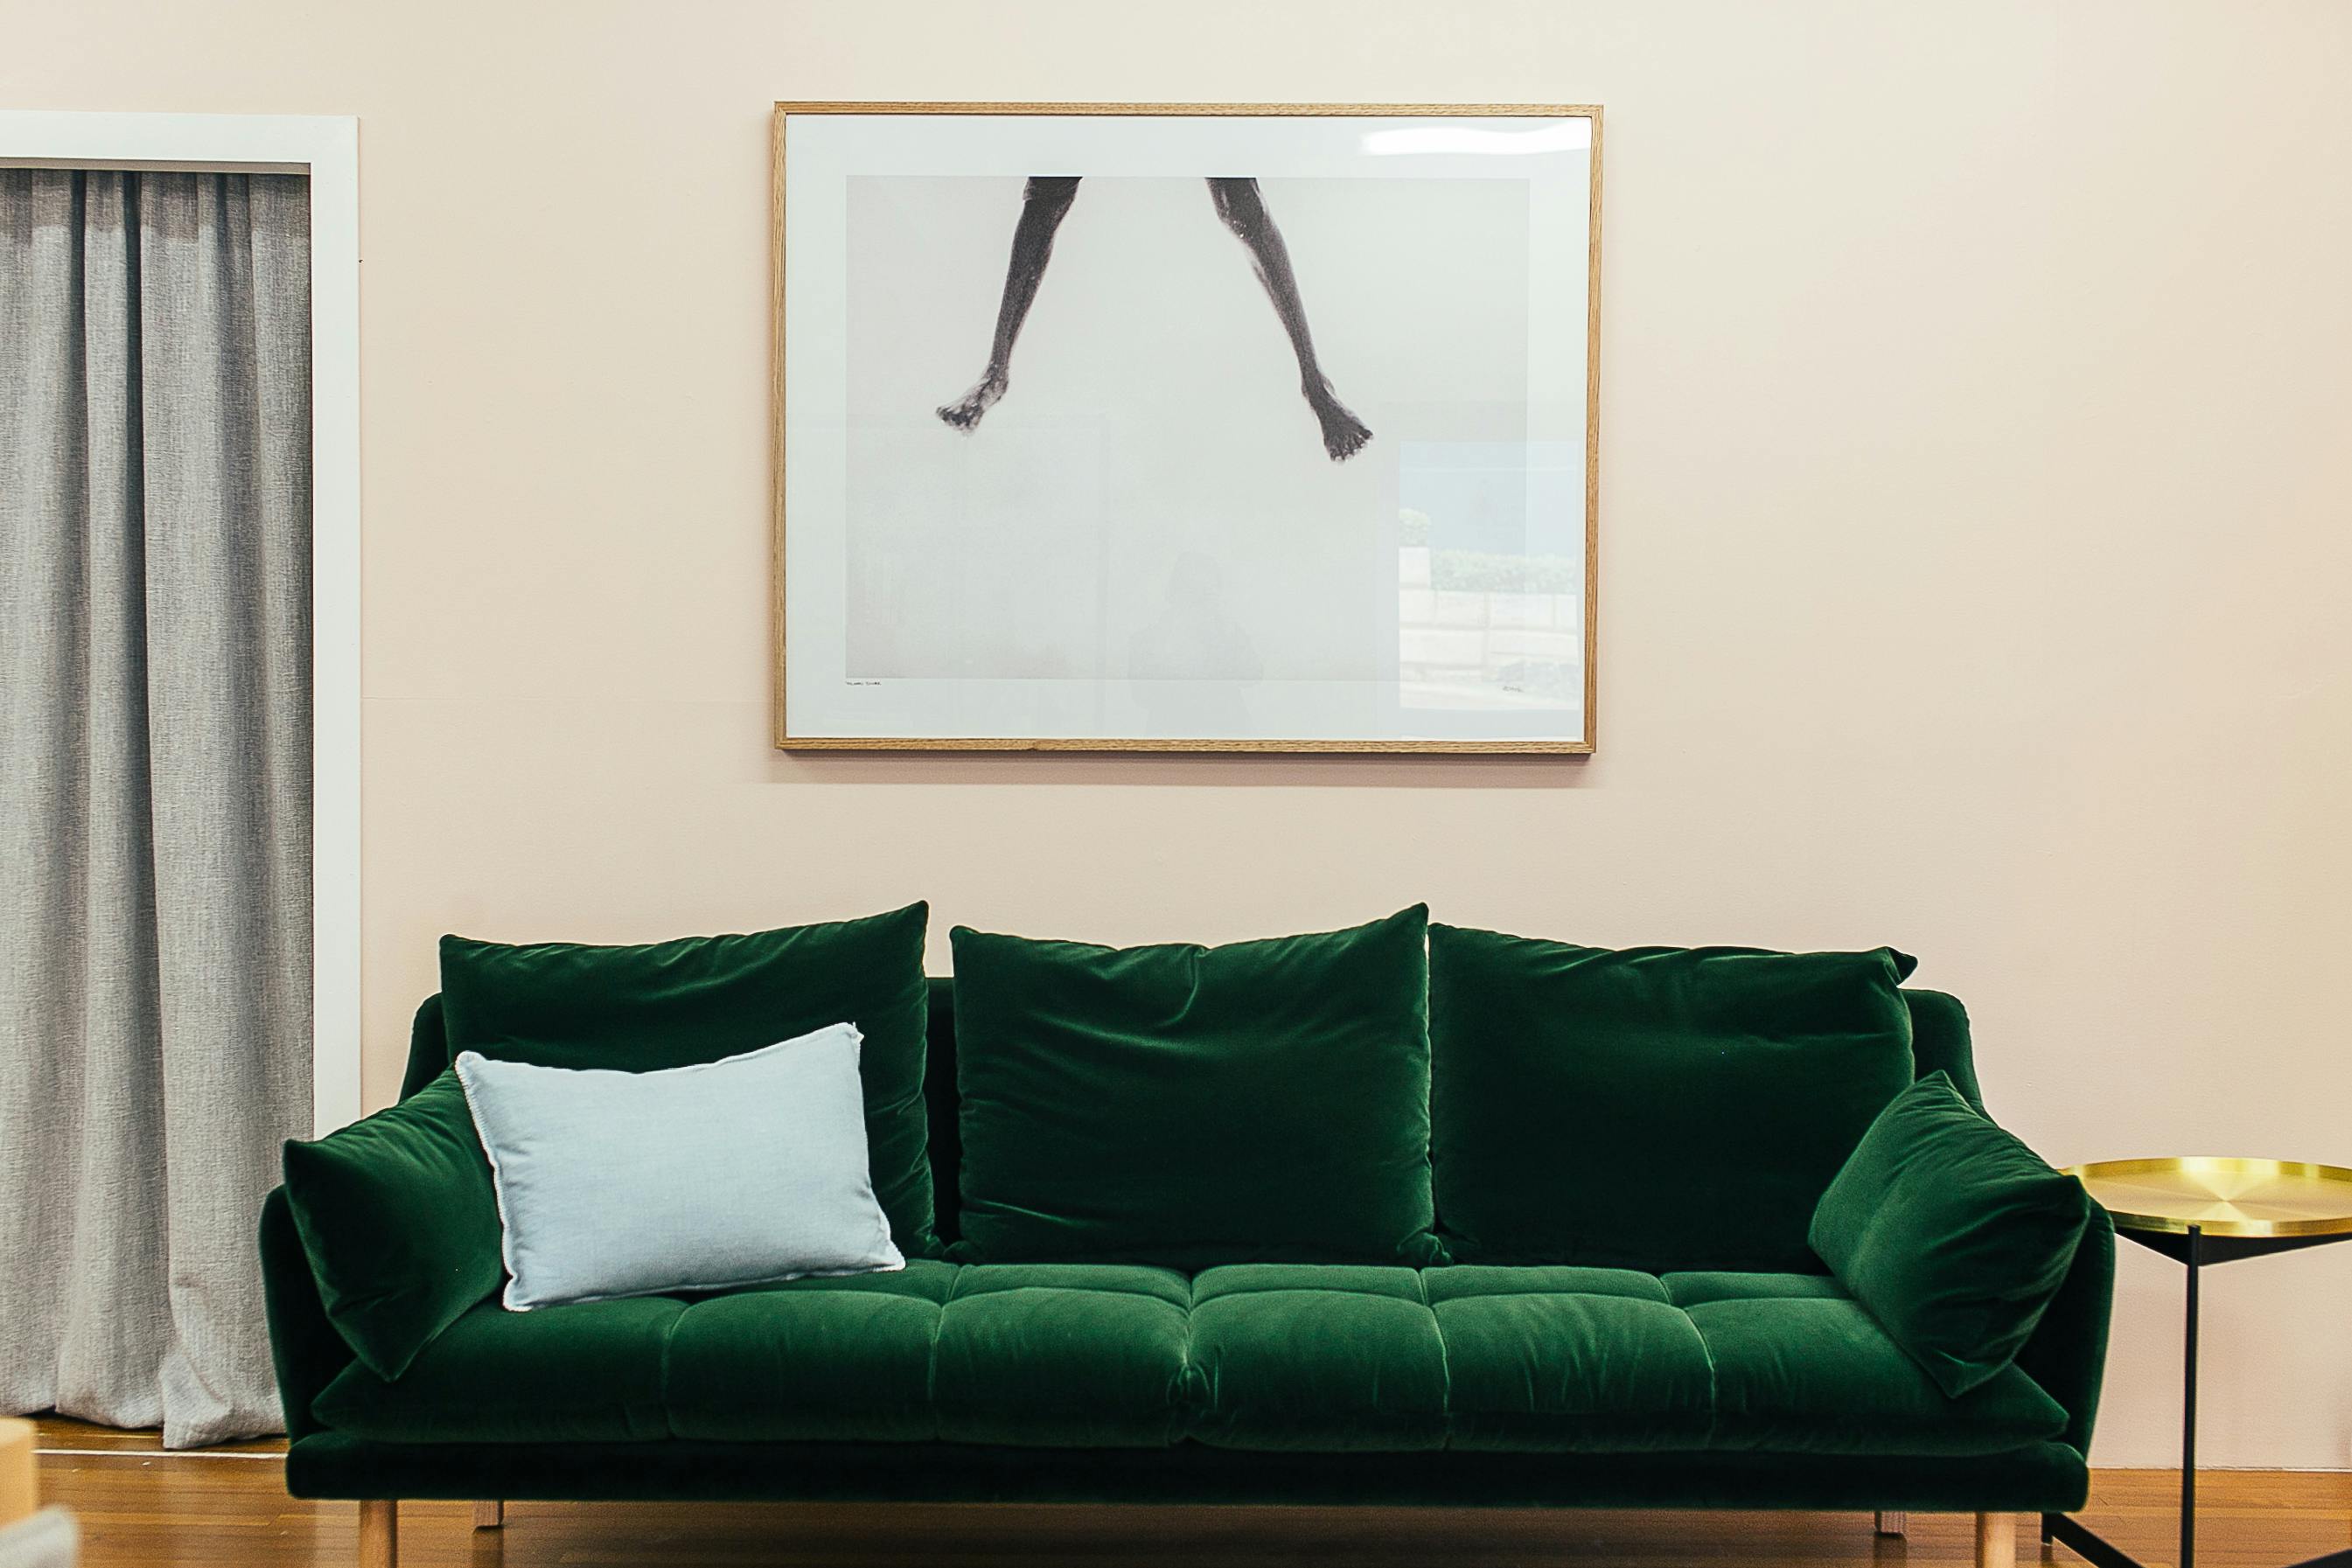 Modern Sofa Images - Free Download on Freepik